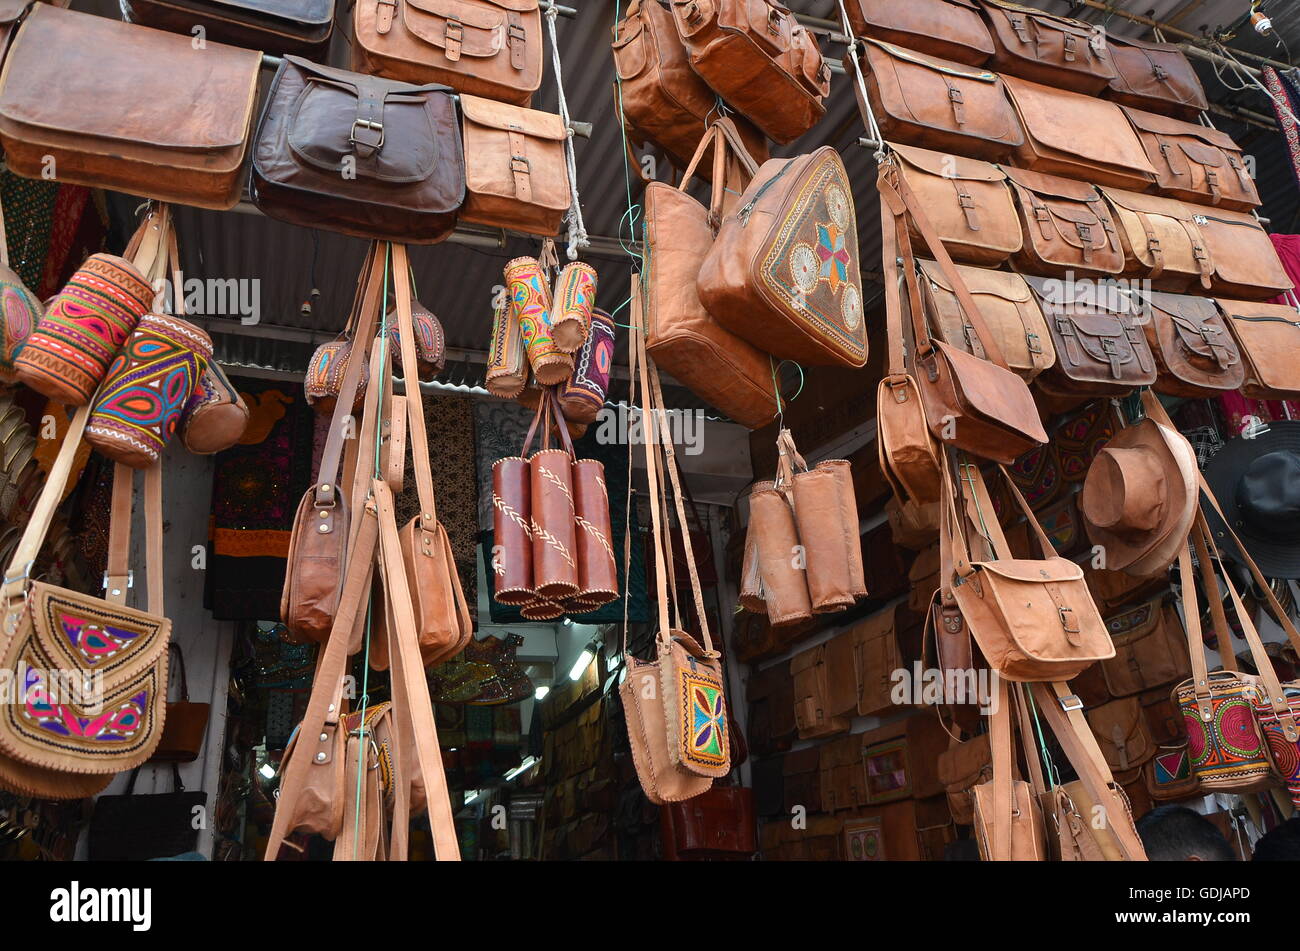 Ein Geschäft in Pushkar Fair, Indien, Verkauf Ledertaschen, Taschen, Beutel, Geldbörsen und verschiedene dekorative Lederartikel. Stockfoto